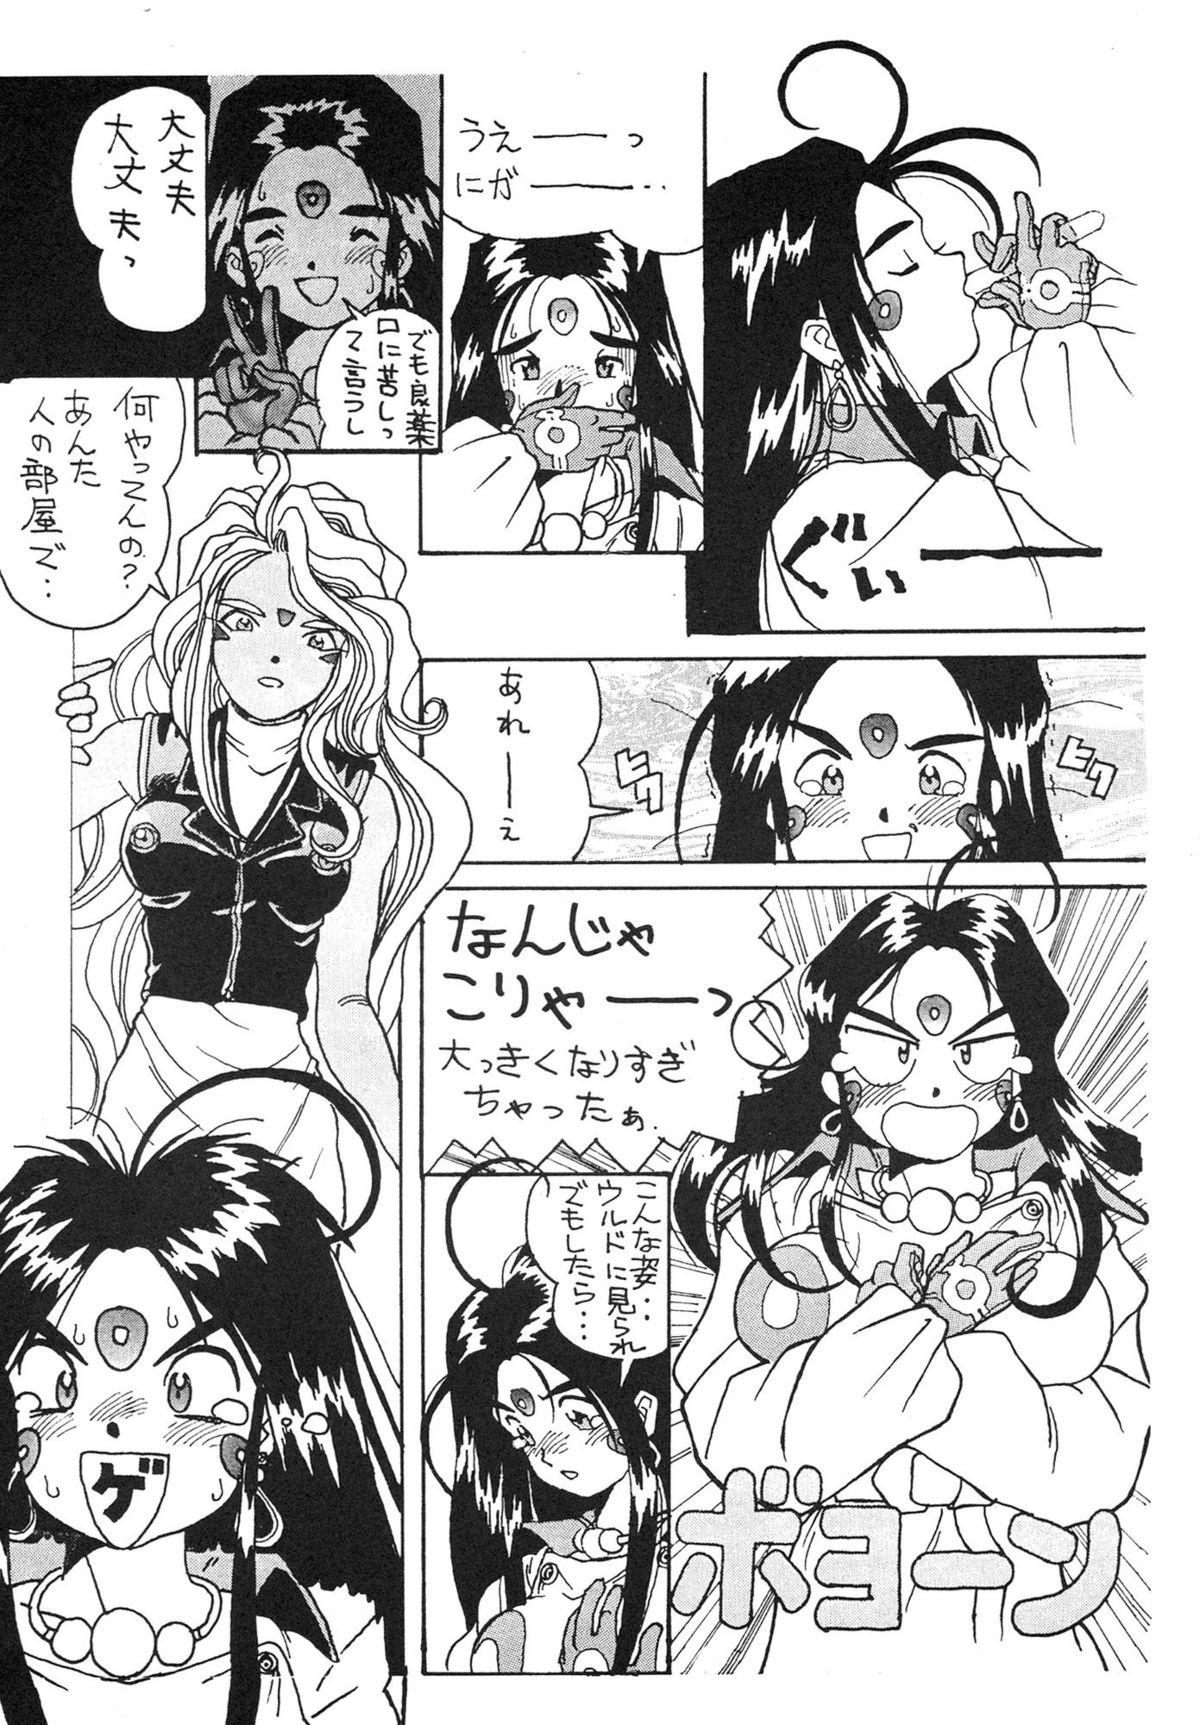 Ass Licking Ah Ah Megamisamasama - Ah my goddess Erotic - Page 11